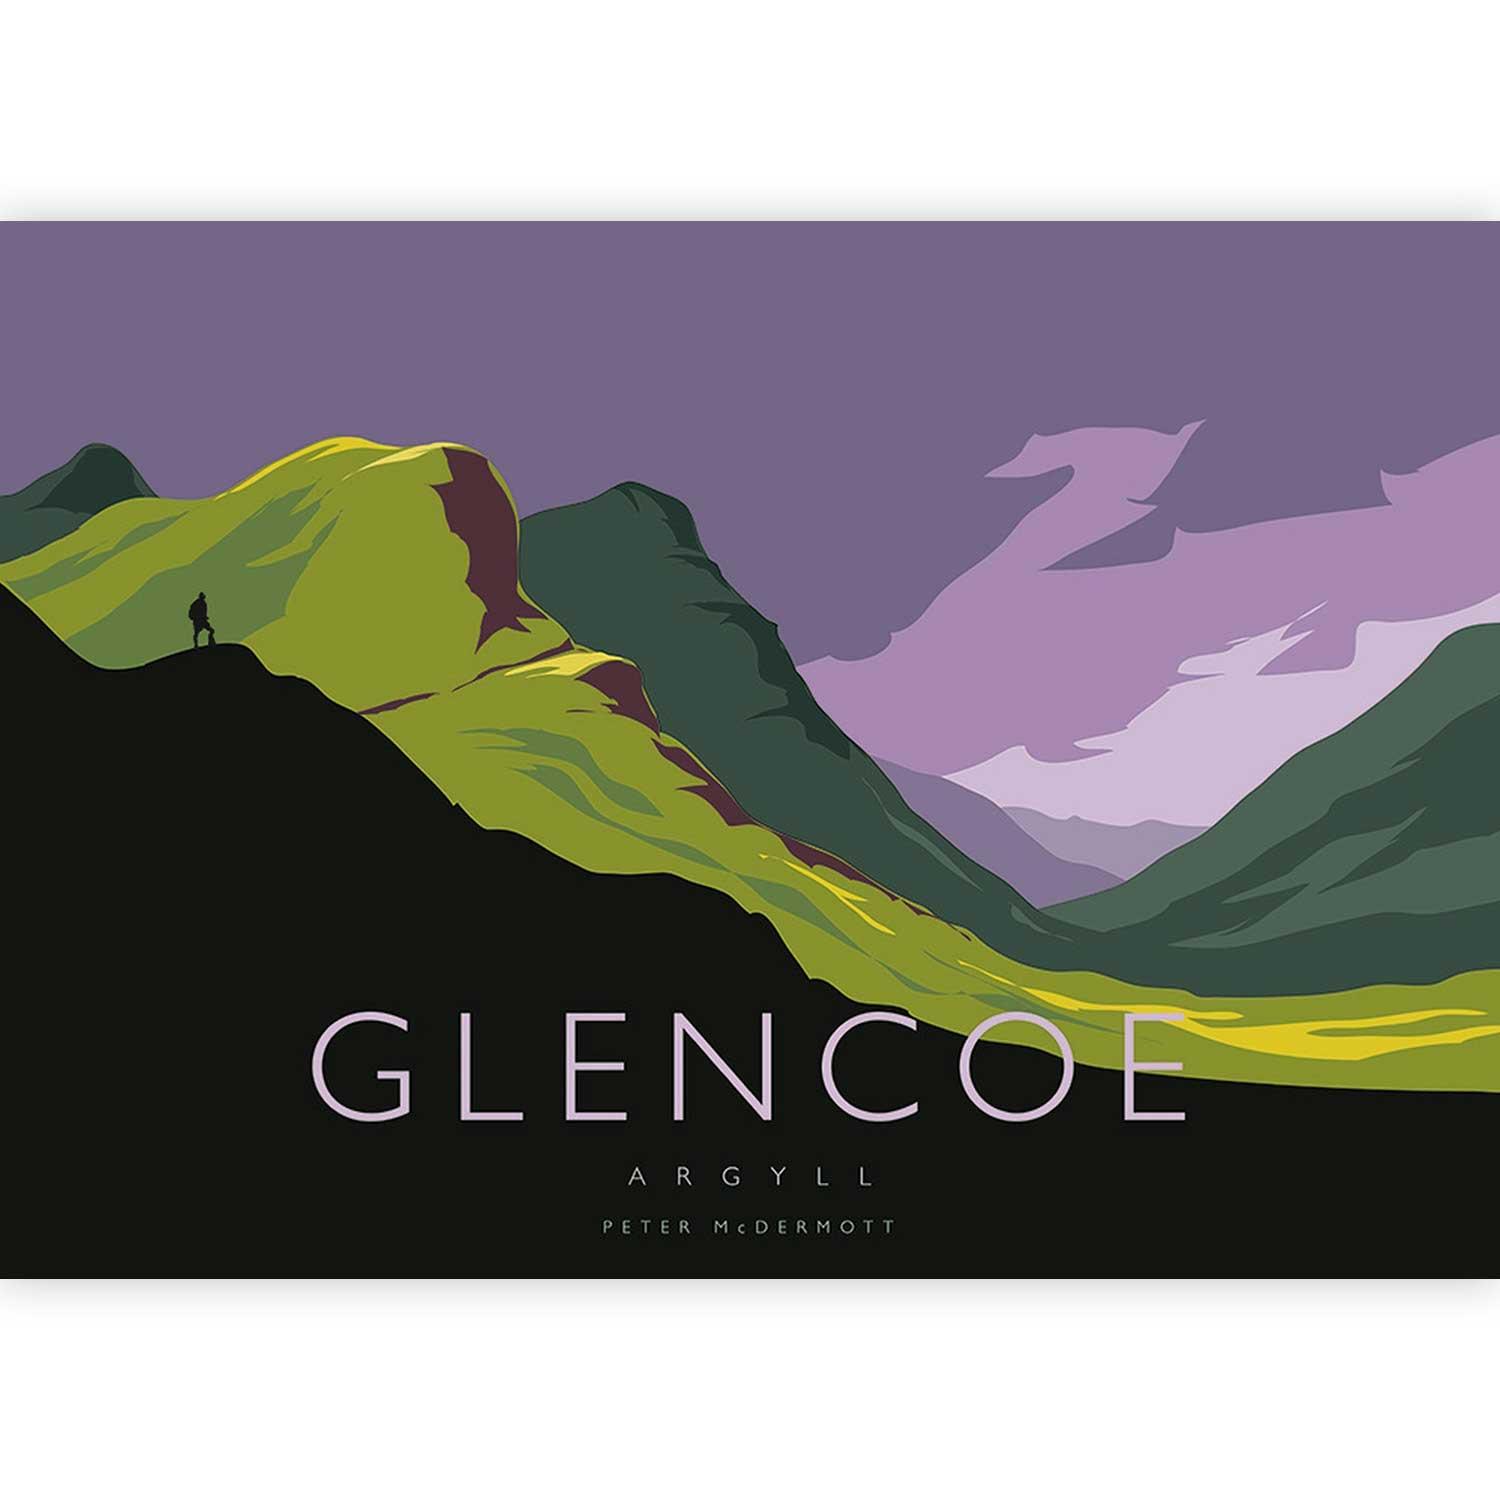 Glencoe by Peter McDermott